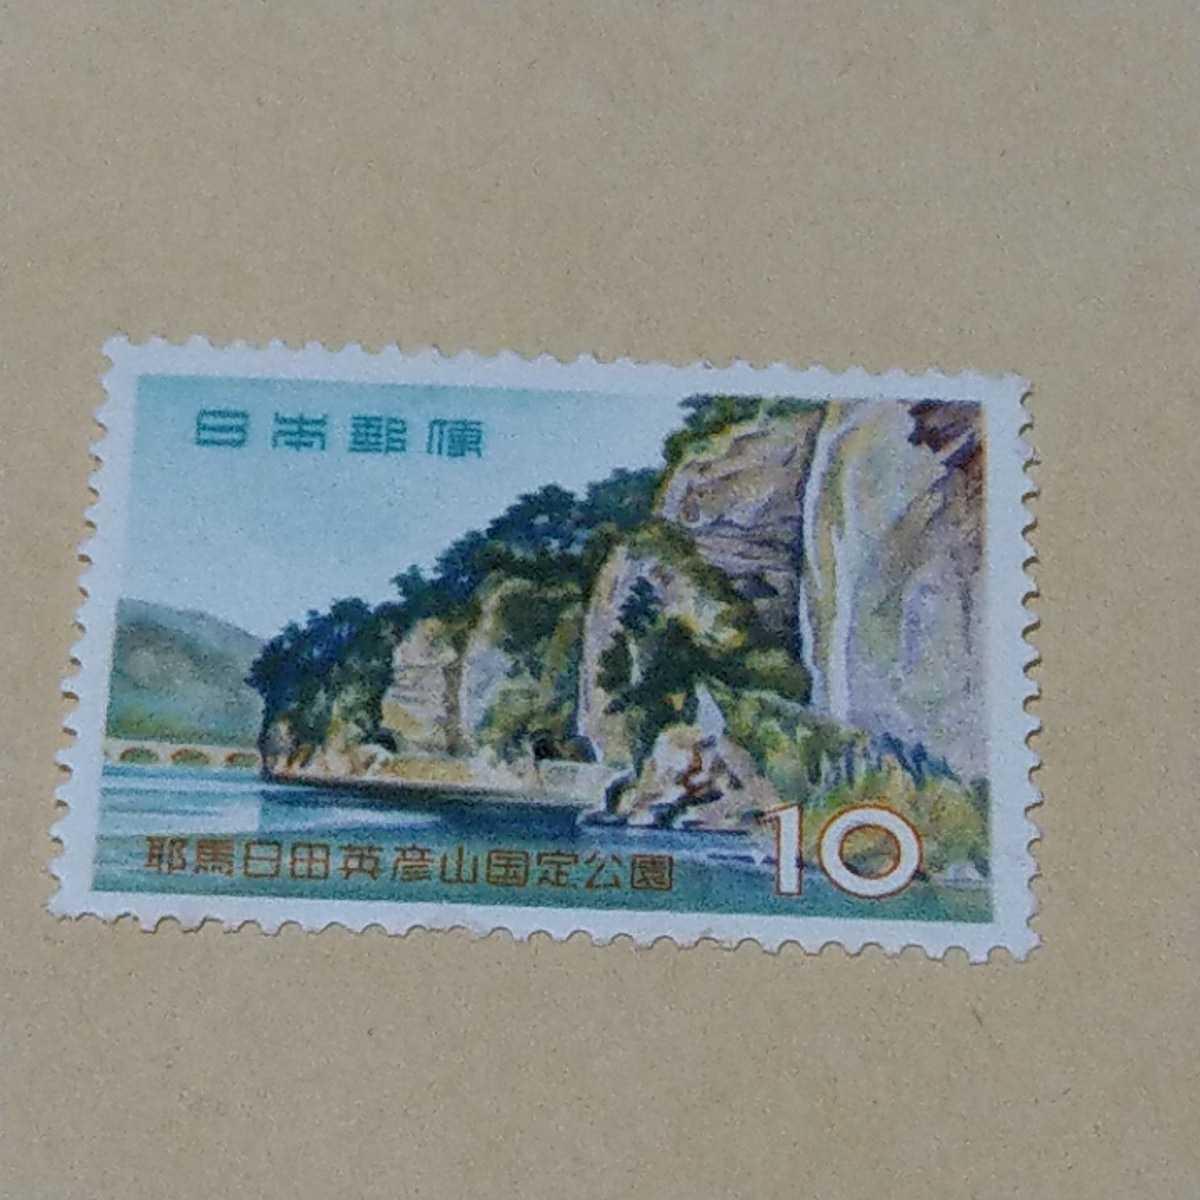 未使用切手 耶馬日田英彦山国定公園 耶馬溪 10円 1959の画像1